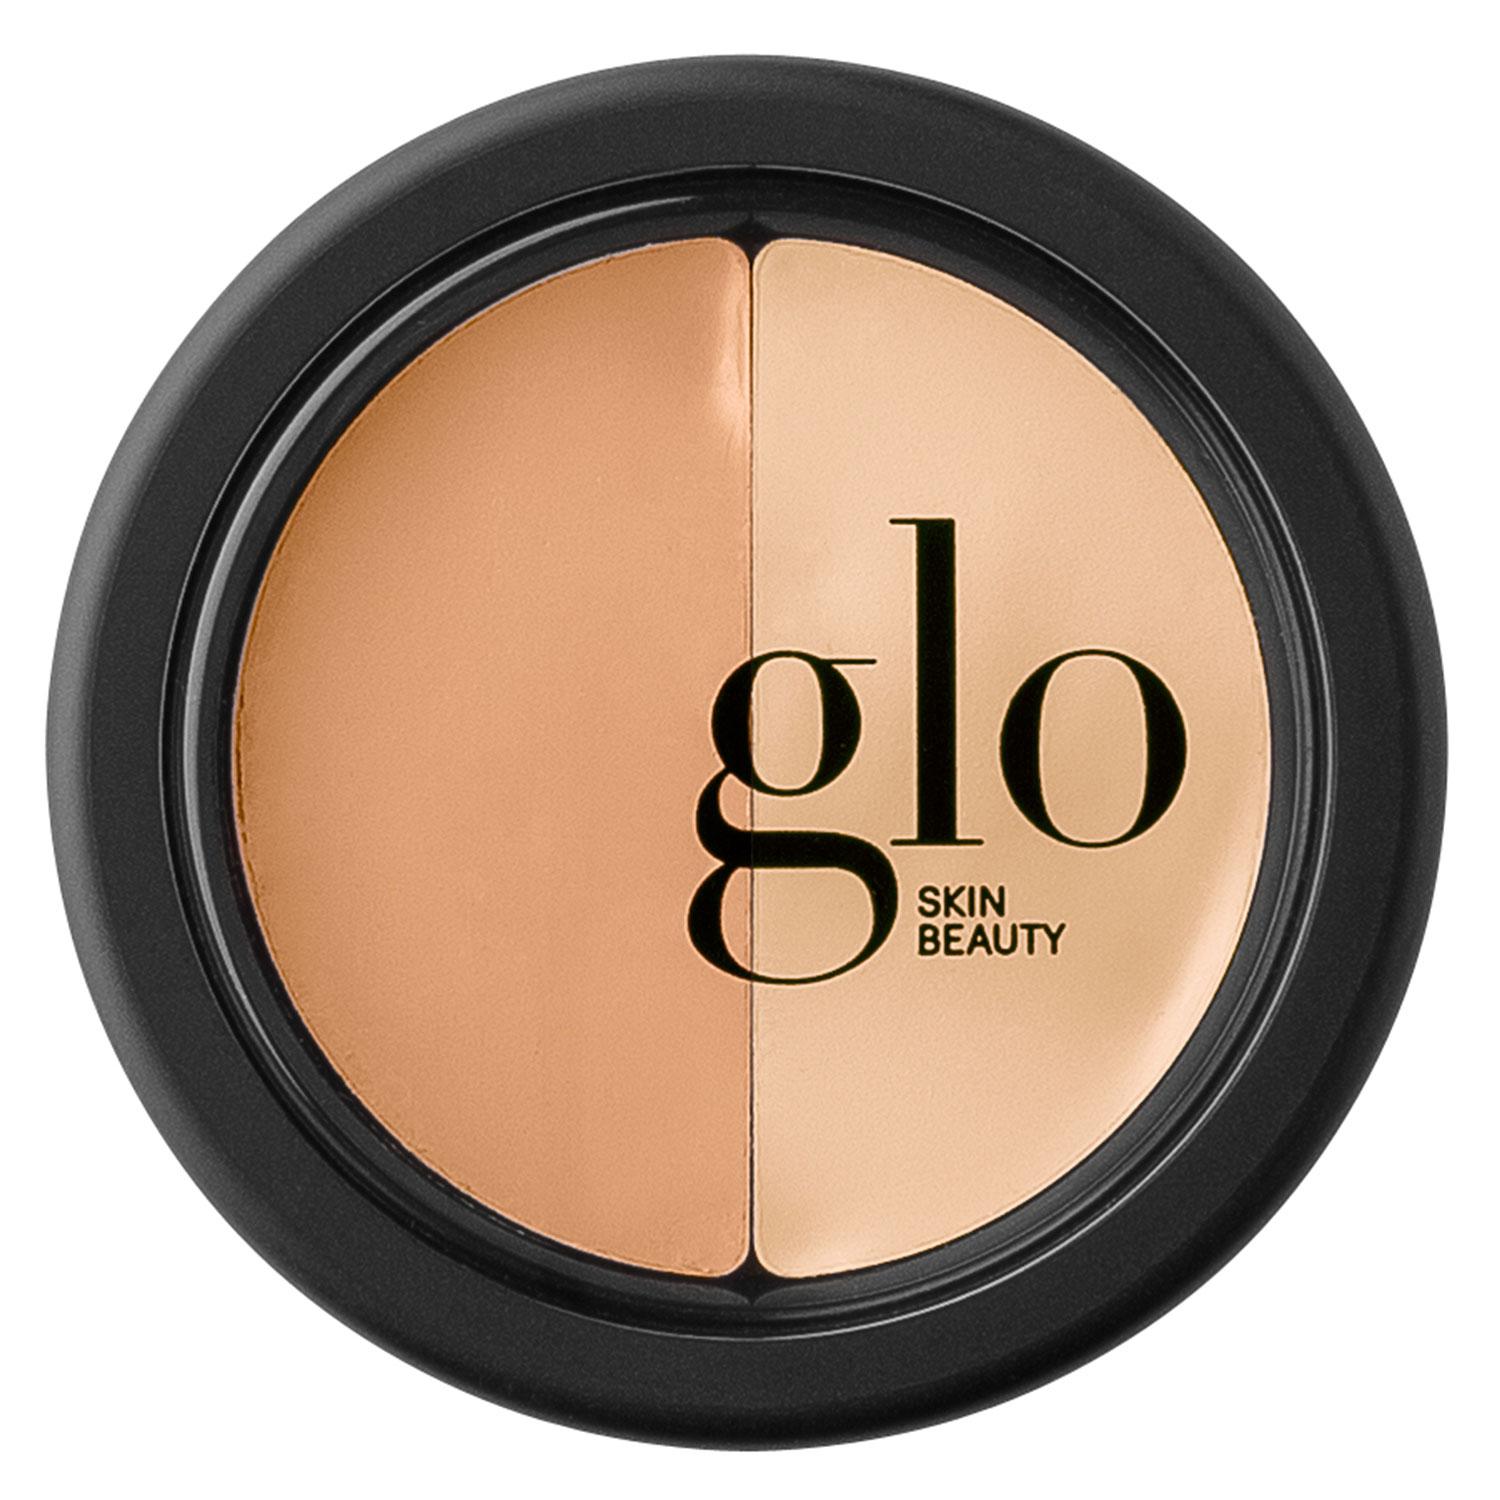 Glo Skin Beauty Concealer - Under Eye Concealer Sand